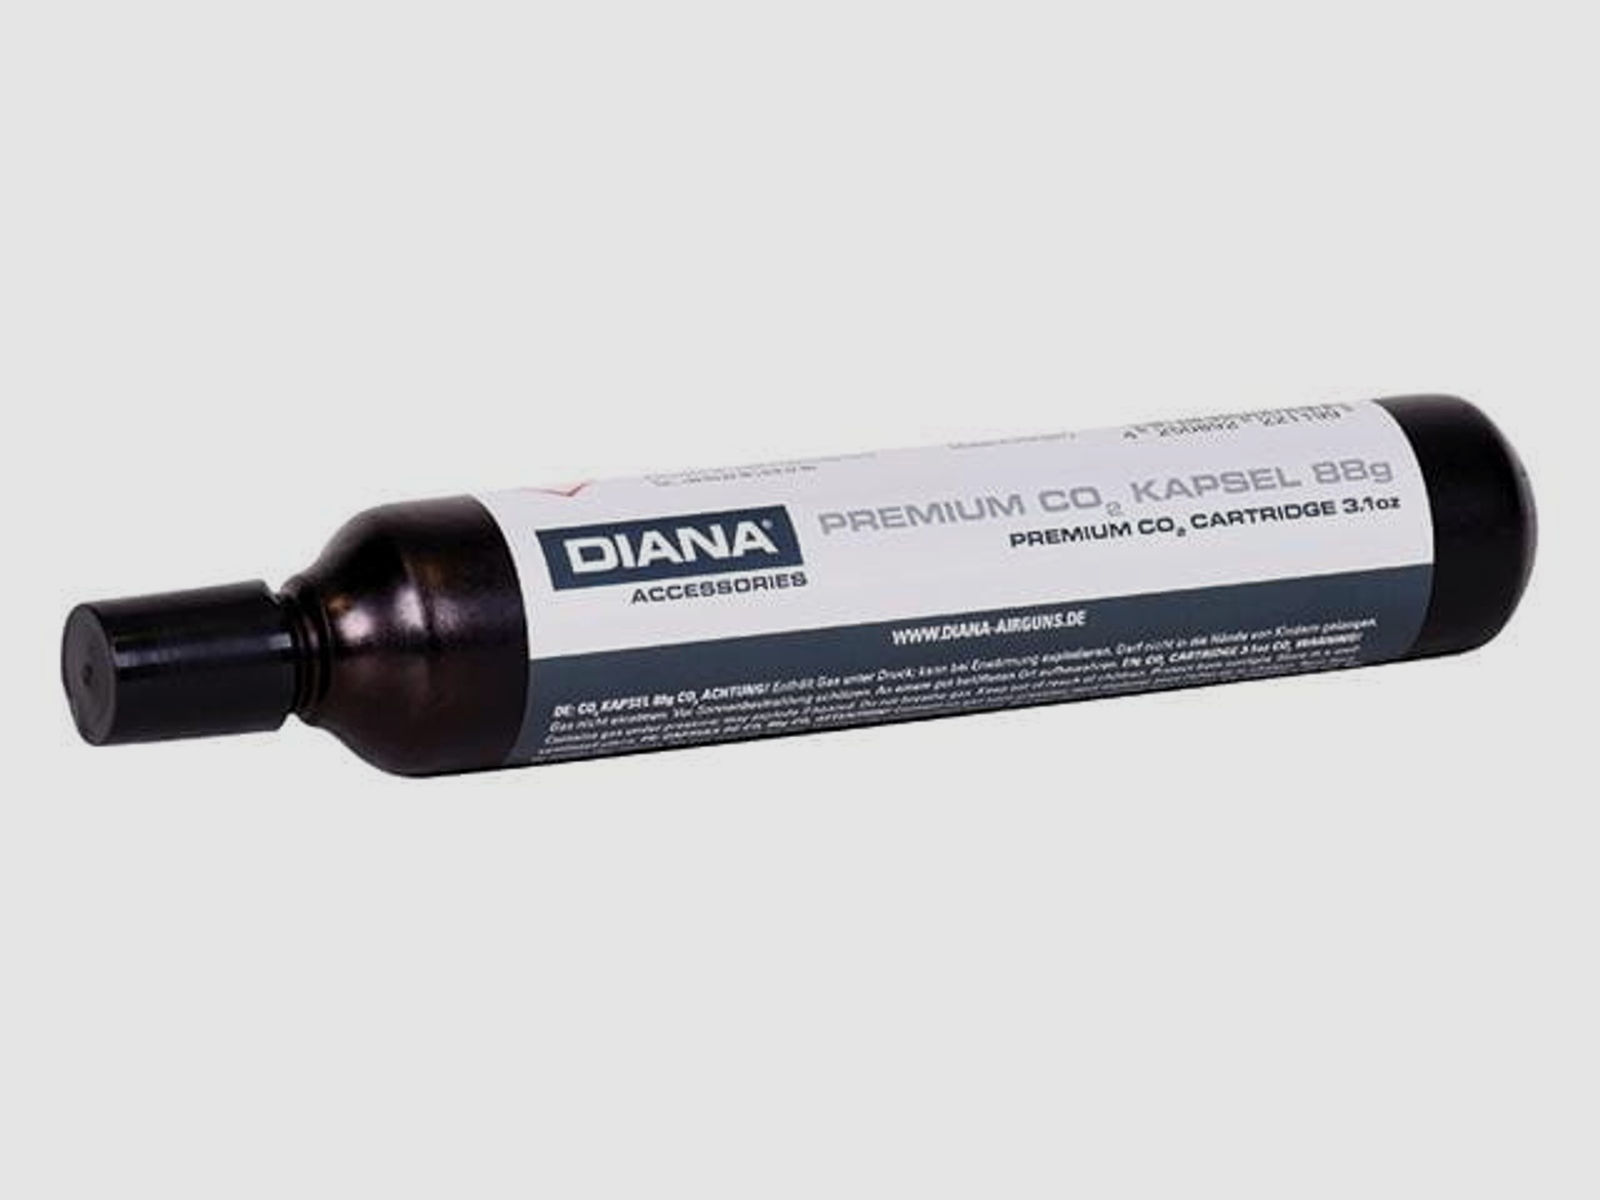 Diana CO2 Kapsel 88 g